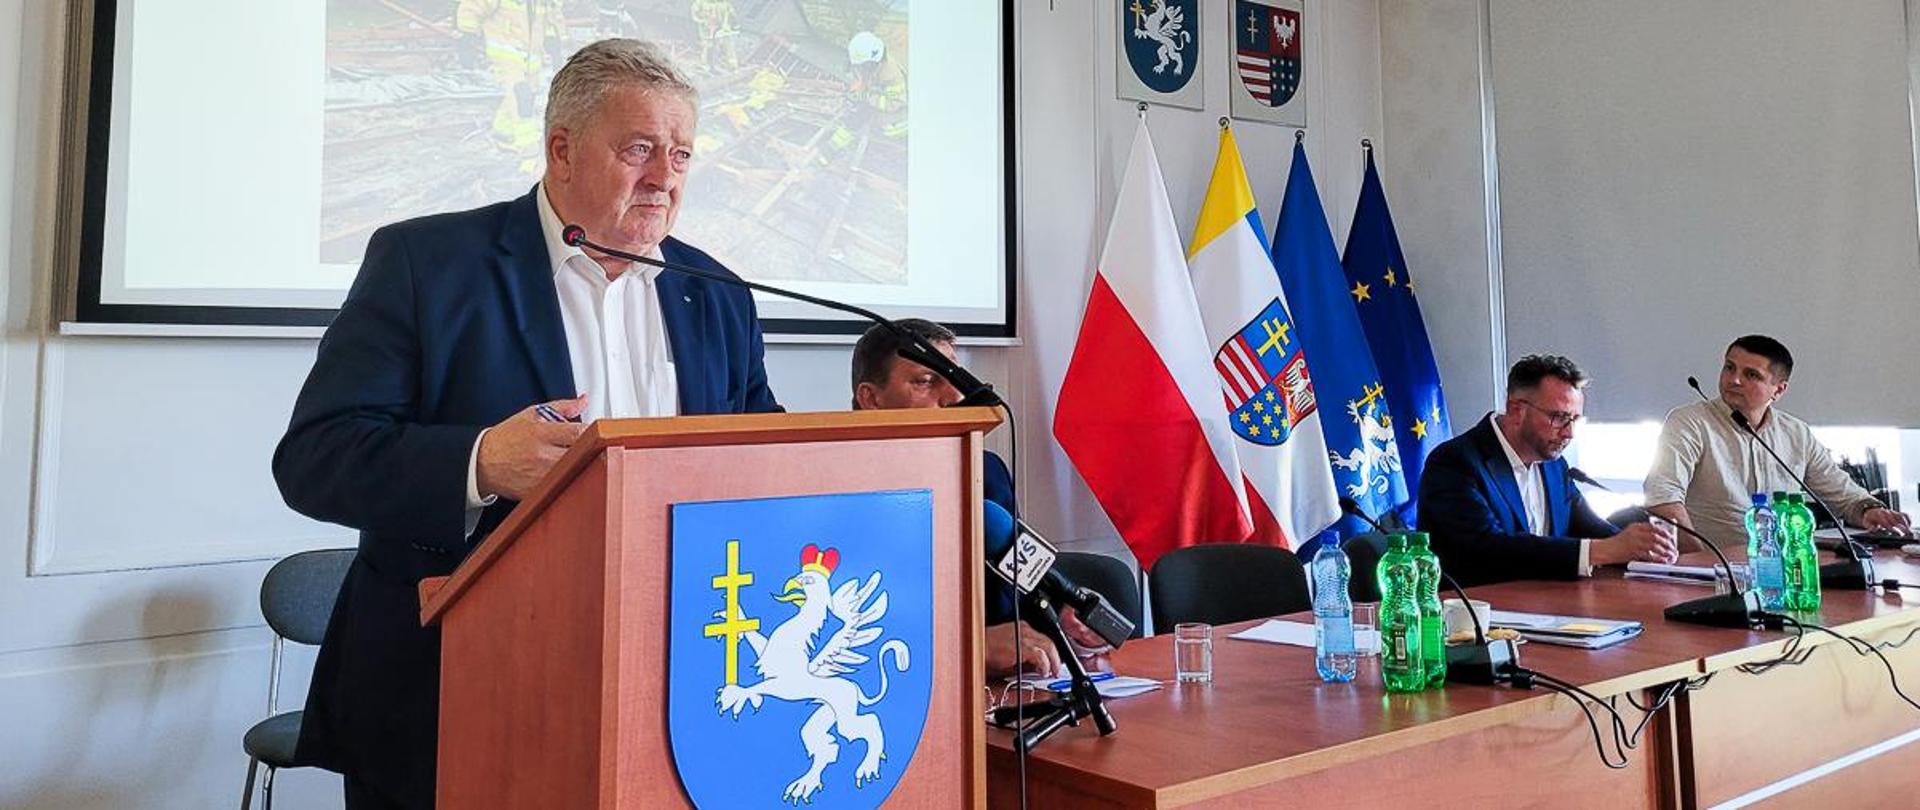 Minister Czesław Siekierski przemawia podczas sesji rady powiatu jędzrzejowskiego (fot. MRiRW)